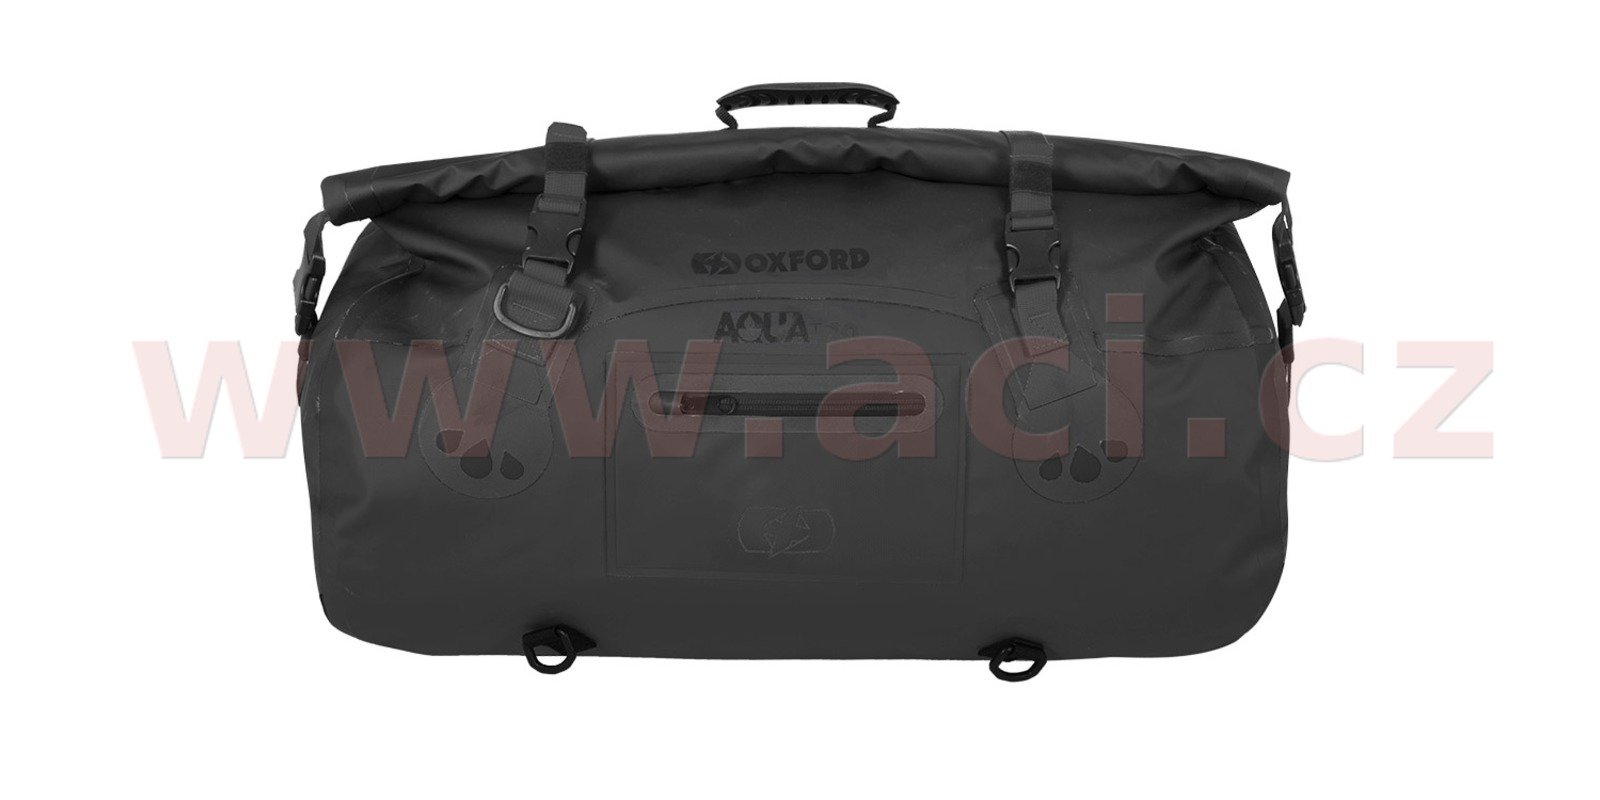 Obrázek produktu OXFORD Aqua T-70 Roll Bag Black 70L OL453